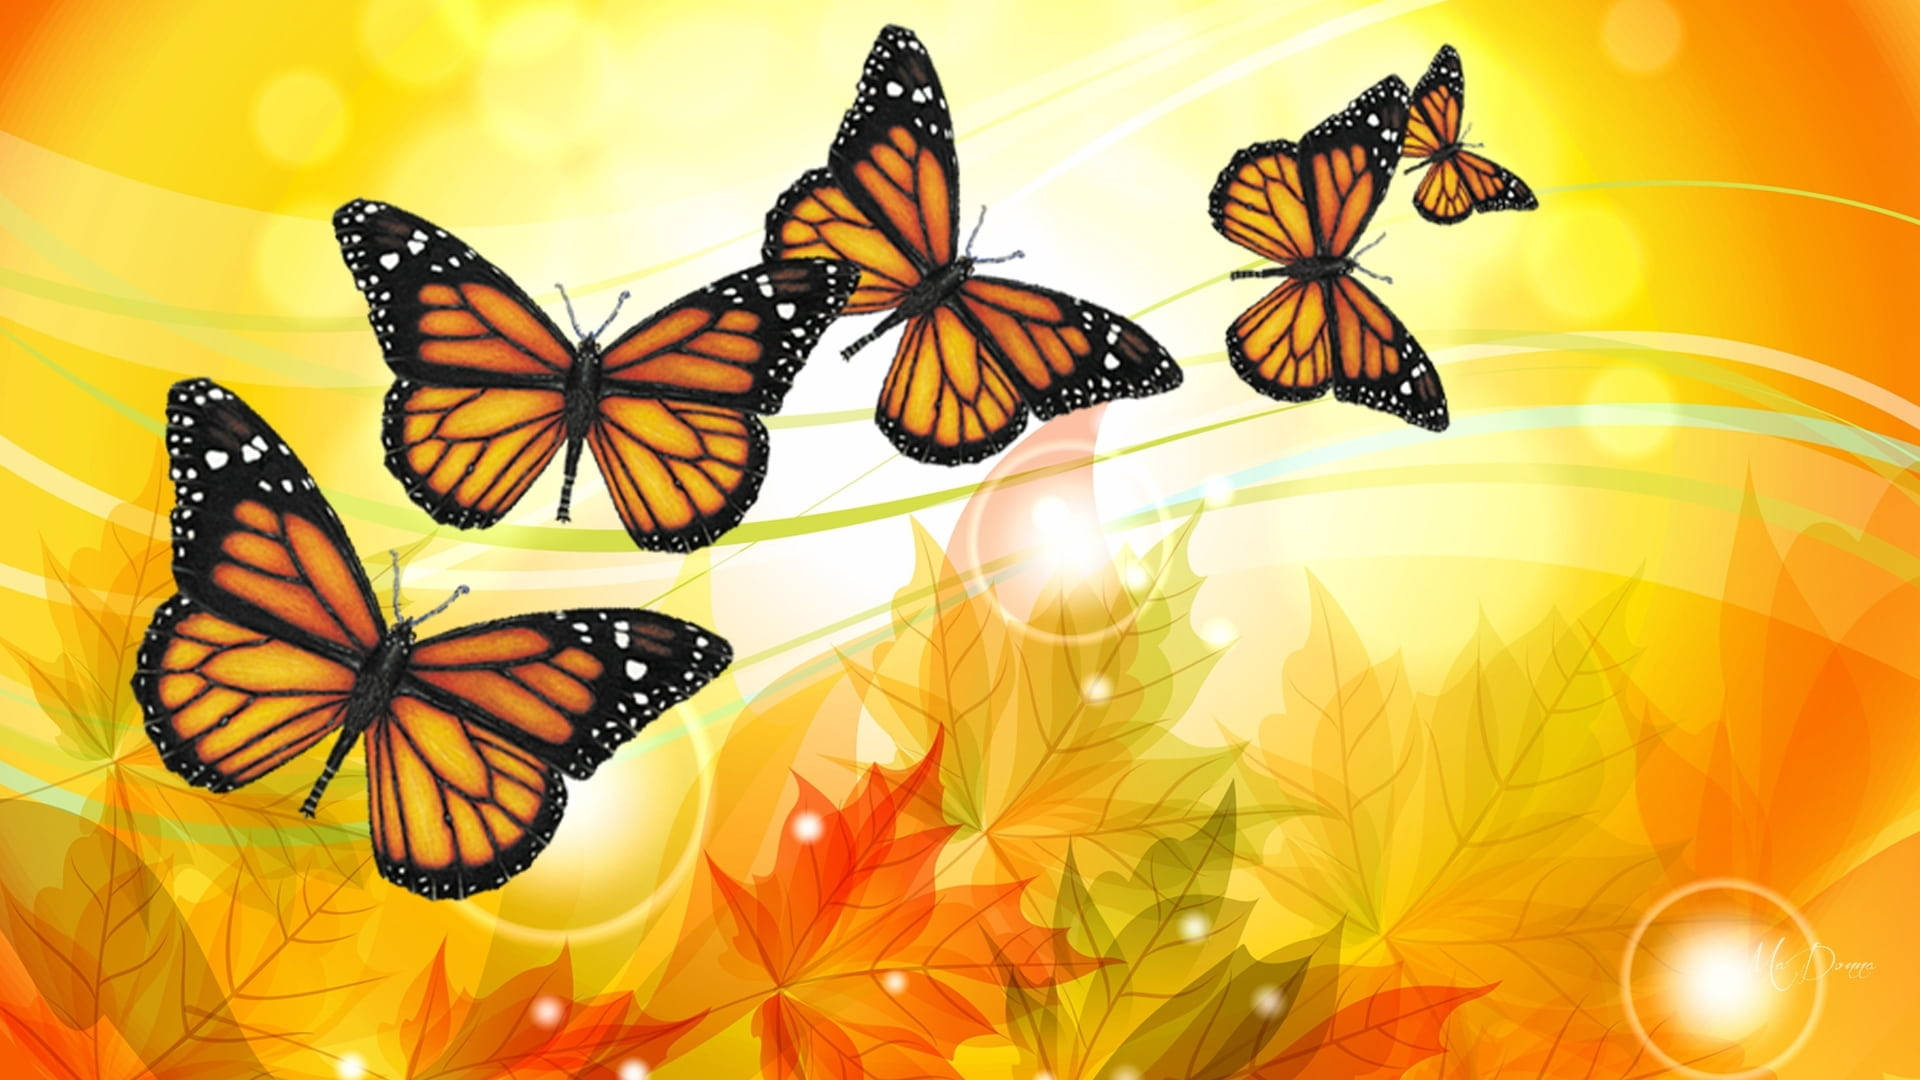 Majestic Orange Butterfly in Aesthetic Lighting Wallpaper